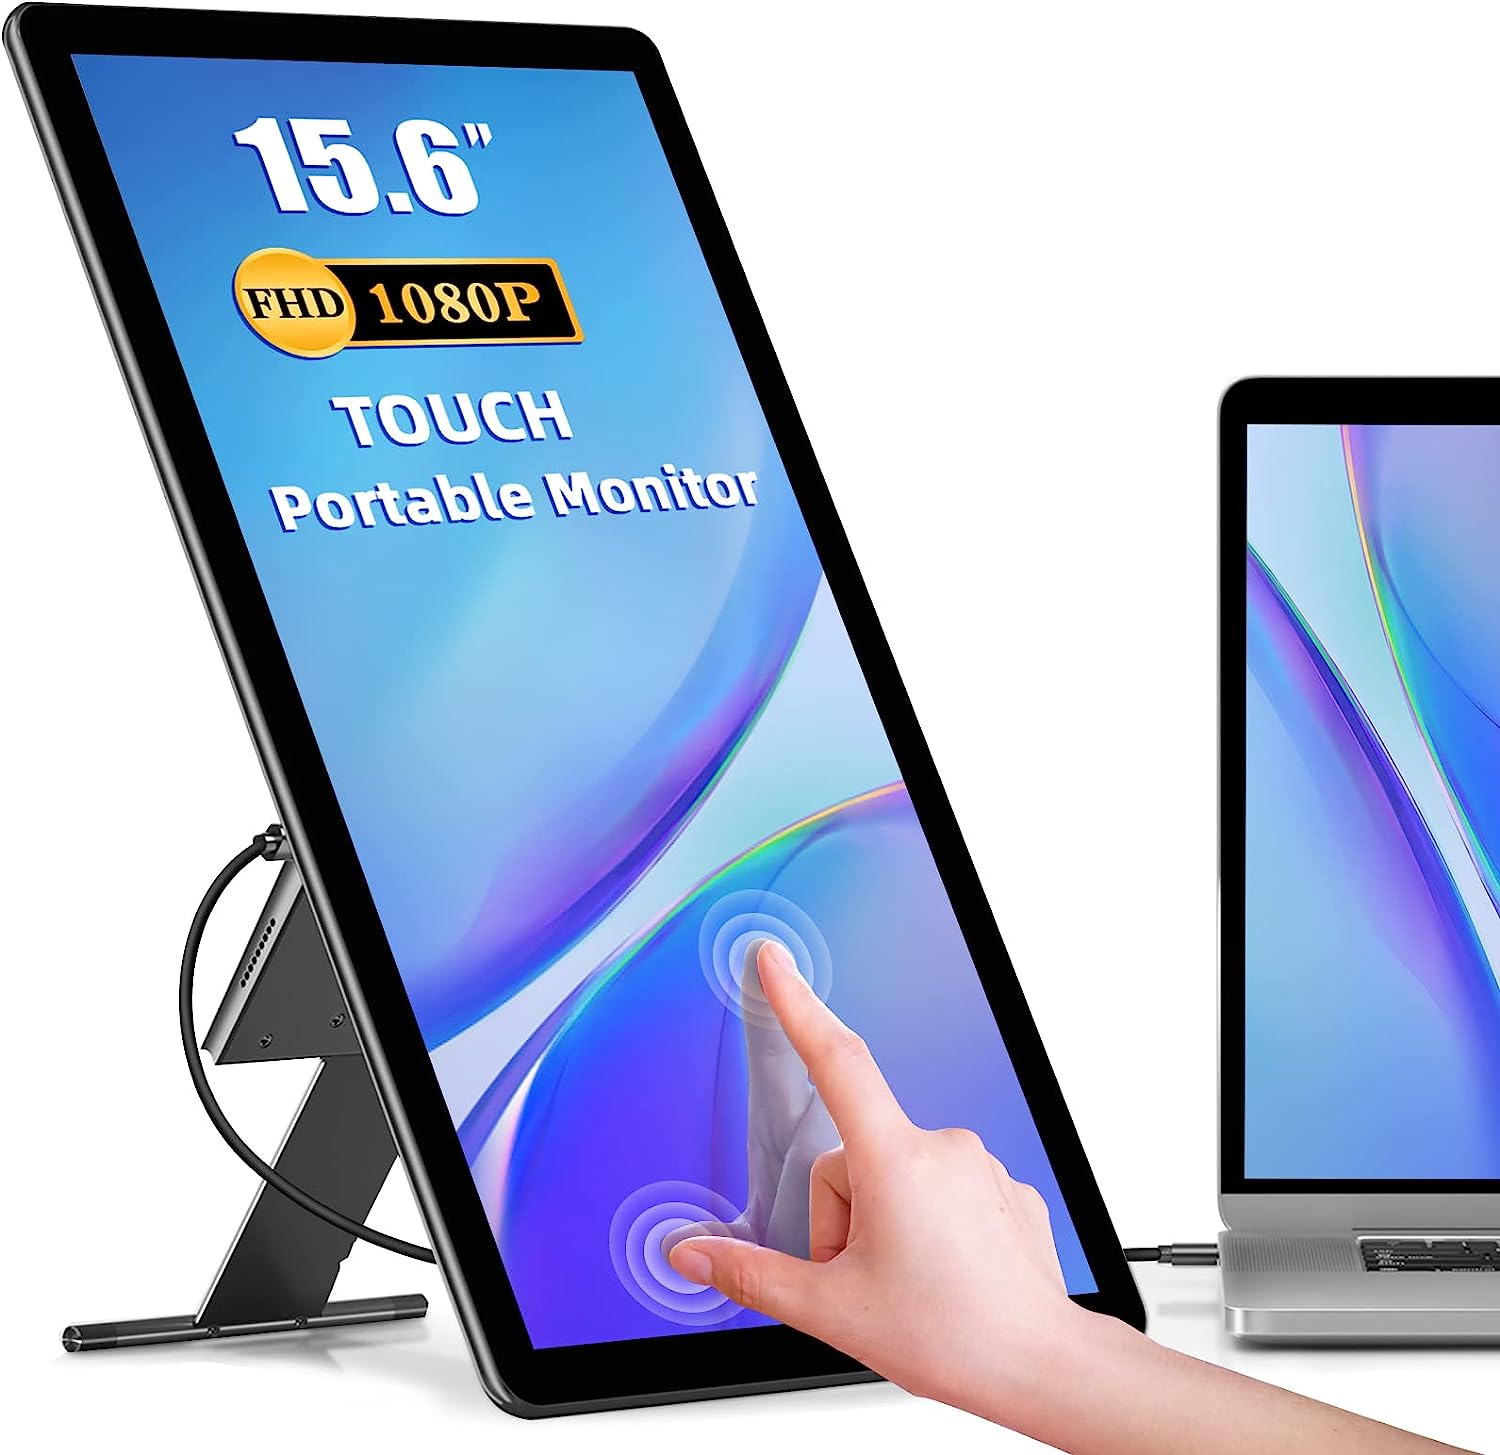 Portable Monitor Touchscreen Kickstand, 15.6